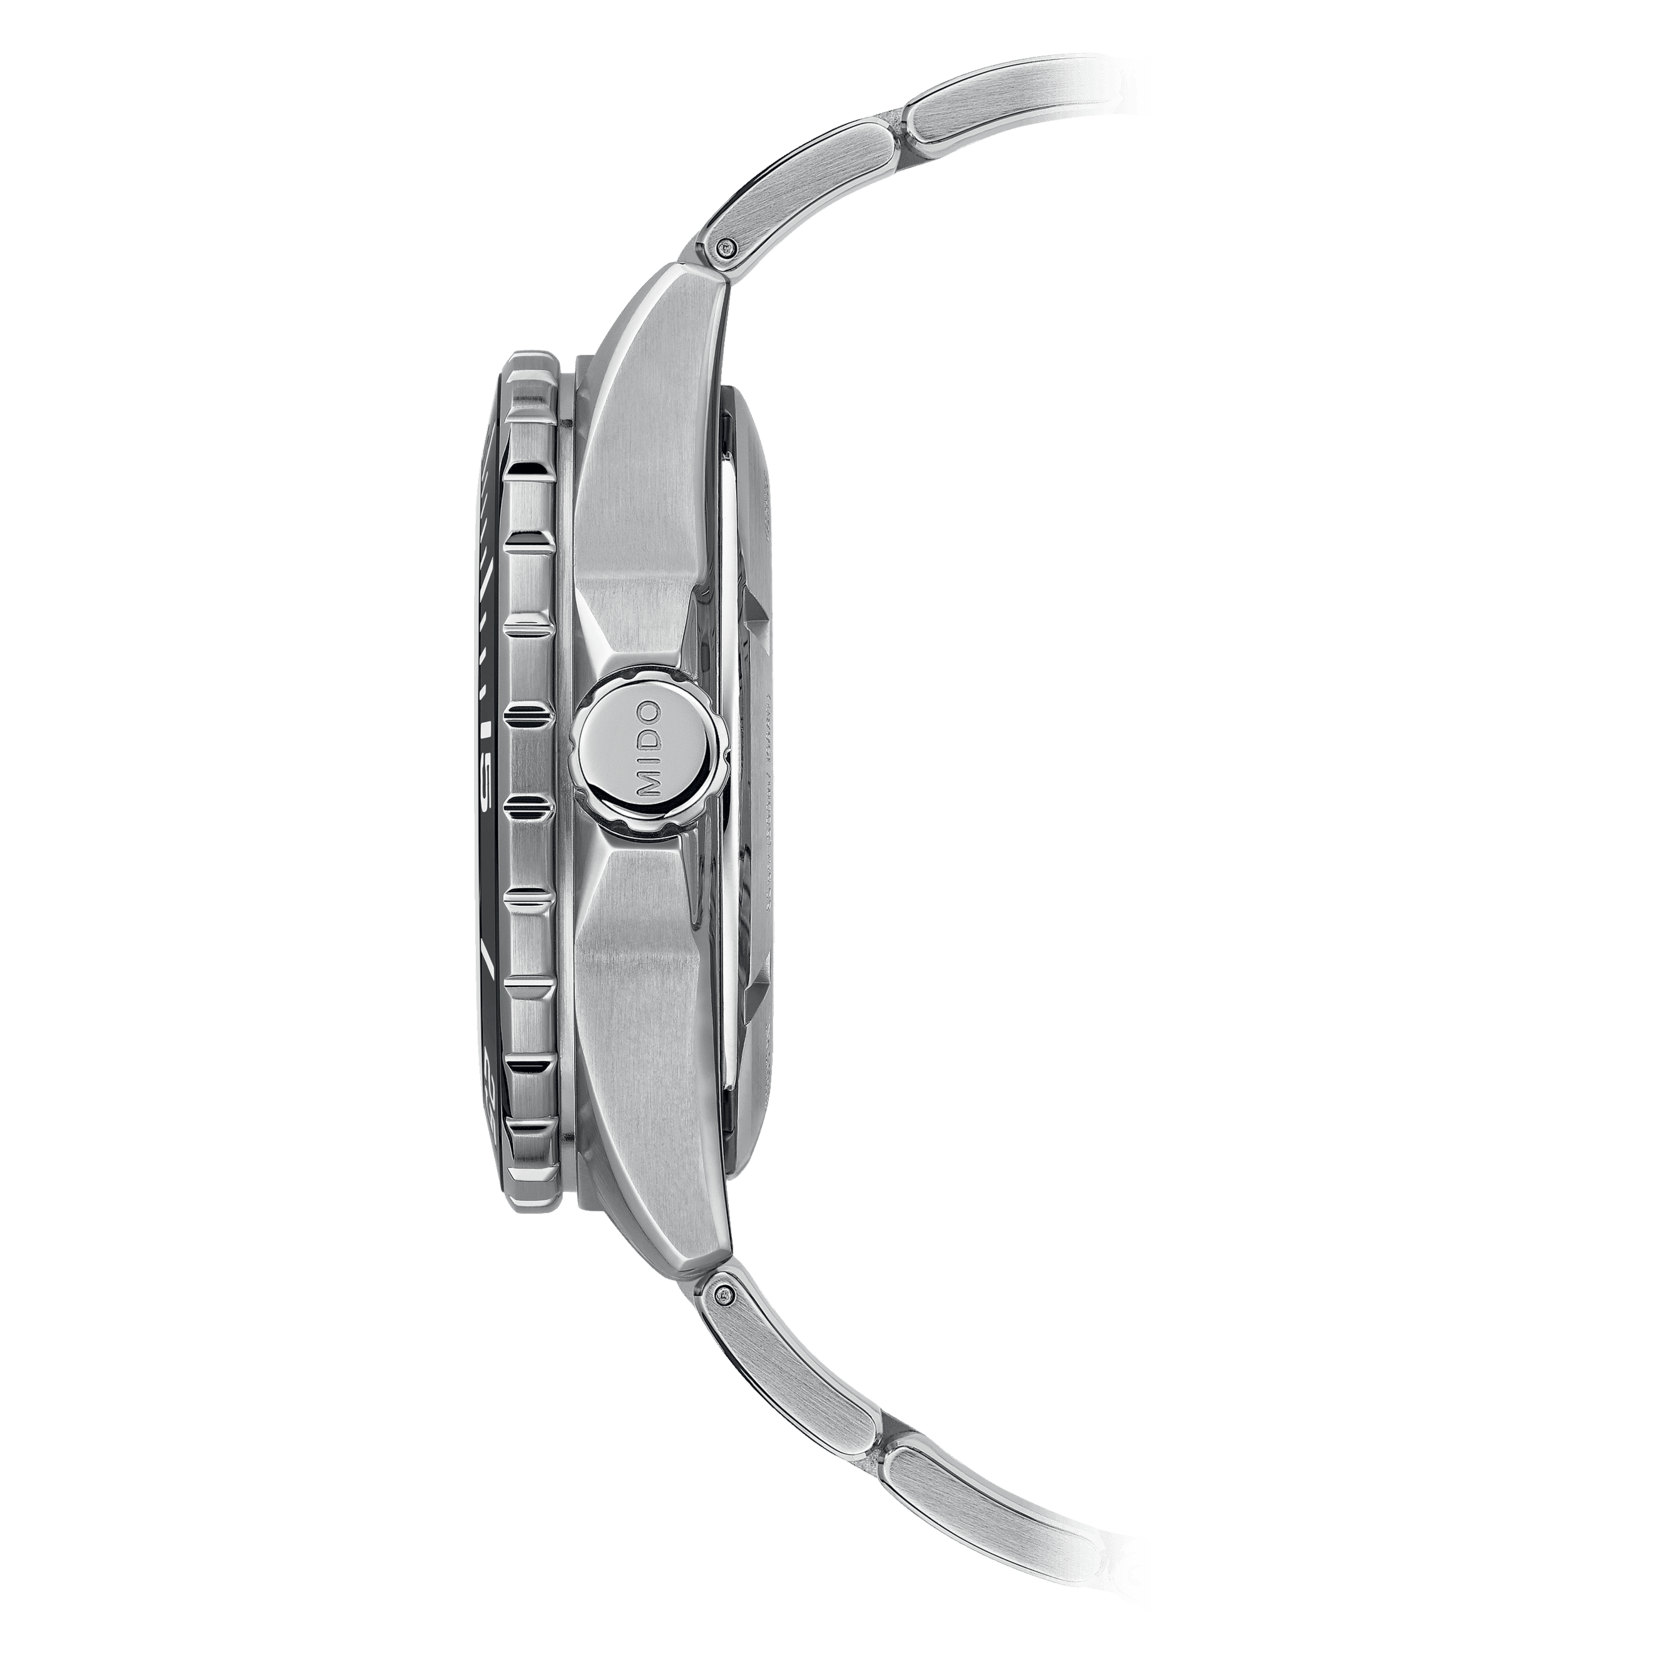 Ocean Star 600 Chronometer